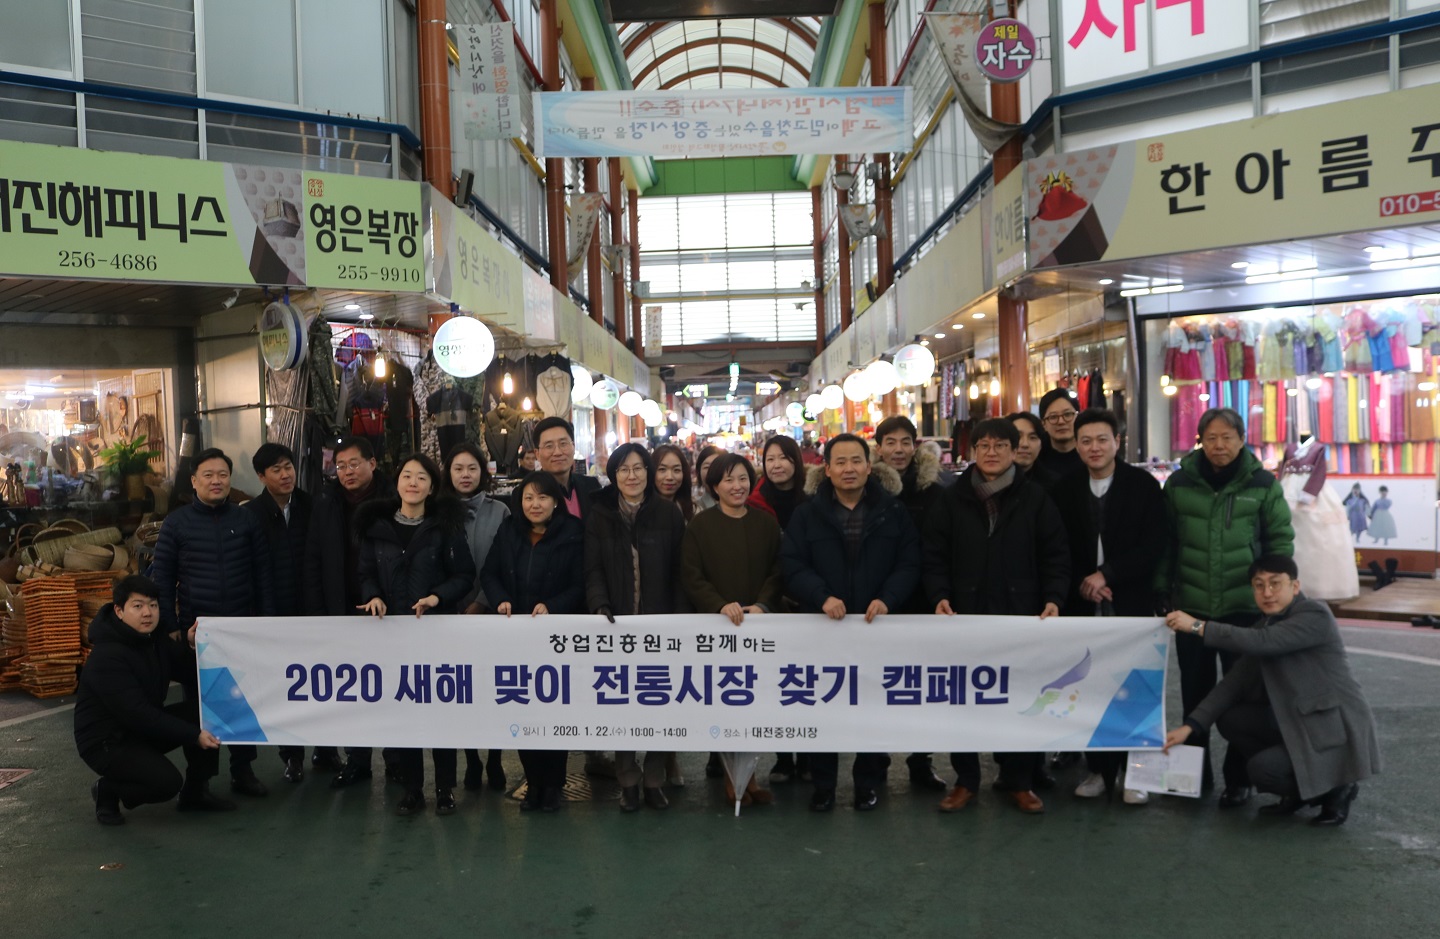 창업진흥원, 대전 중앙시장에서 새해 설맞이 단체사진 첫번째 - 2020 새해 맞이 전통시장 찾기 캠페인 플랭카드를 들고 단체로 기념사진을 촬영하고 있습니다.